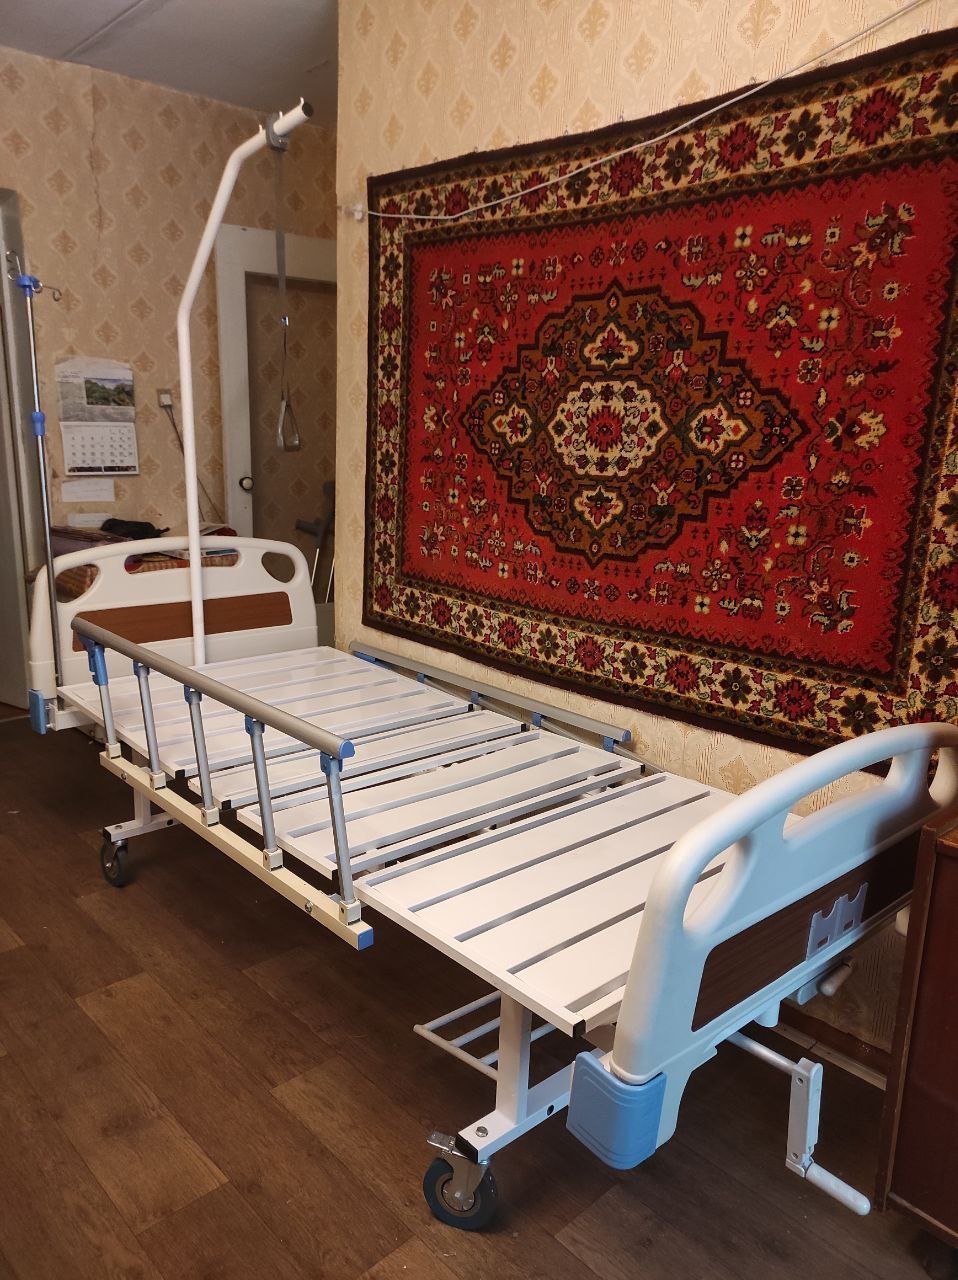 Кровать рс105 б. Перегородка для кровати для лежачих больных. Ограничитель на кровать для лежачих больных. Кровать трансформер для лежачих больных с судном. Кровать для гемодиализа и больной.